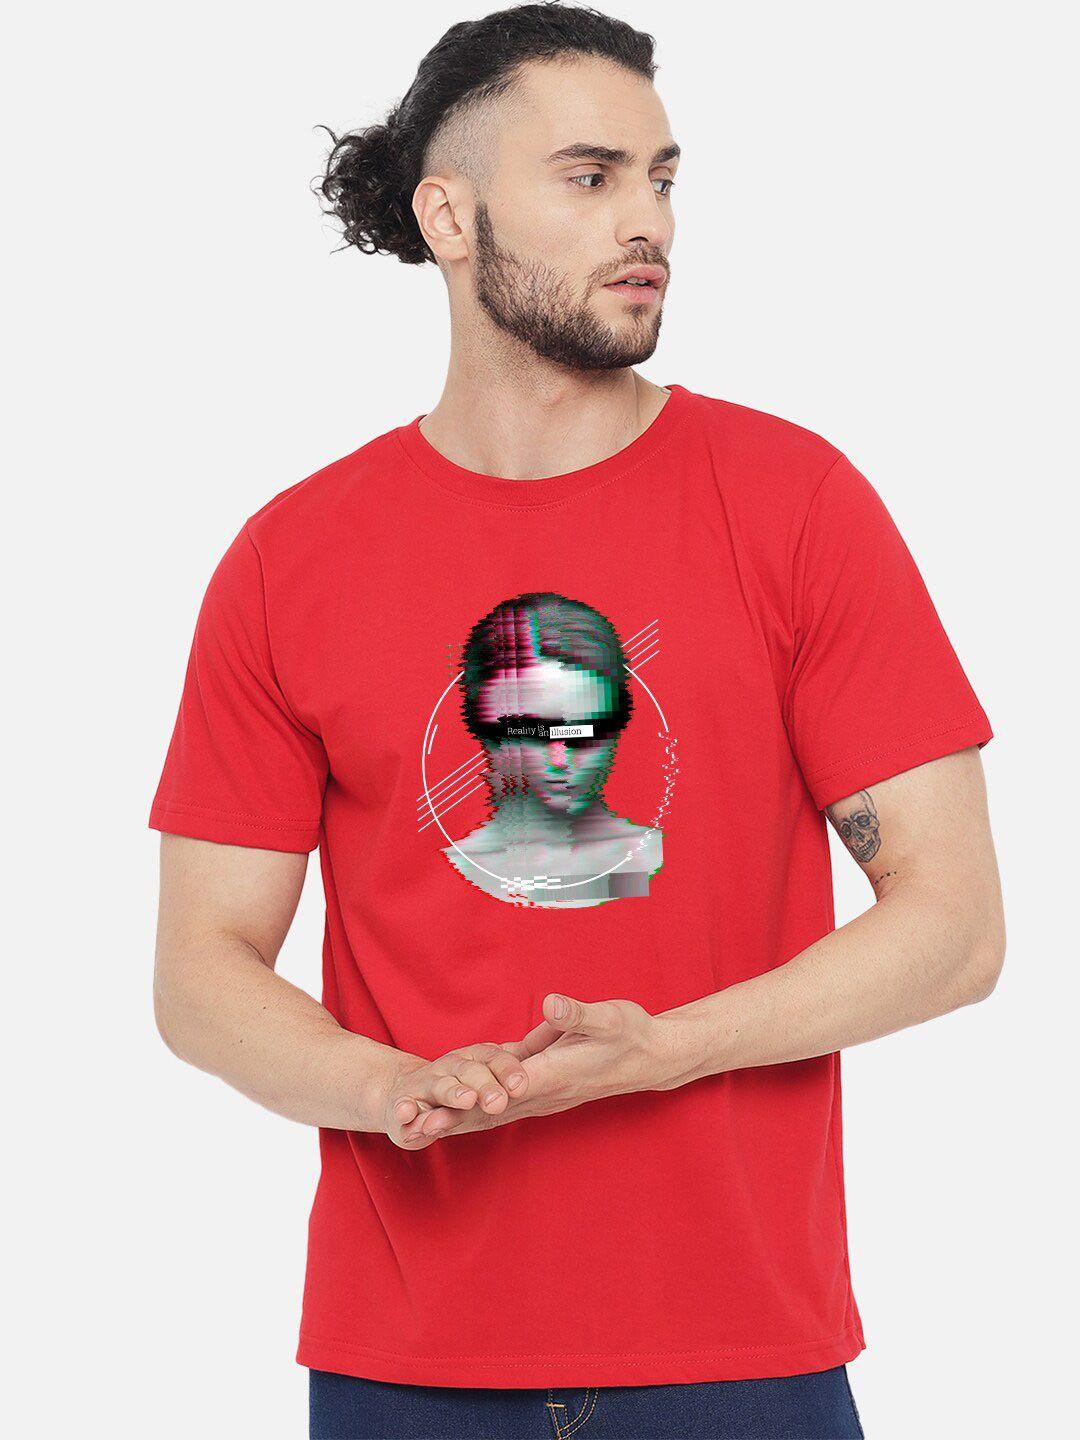 fflirtygo men red graphic printed cotton t-shirt